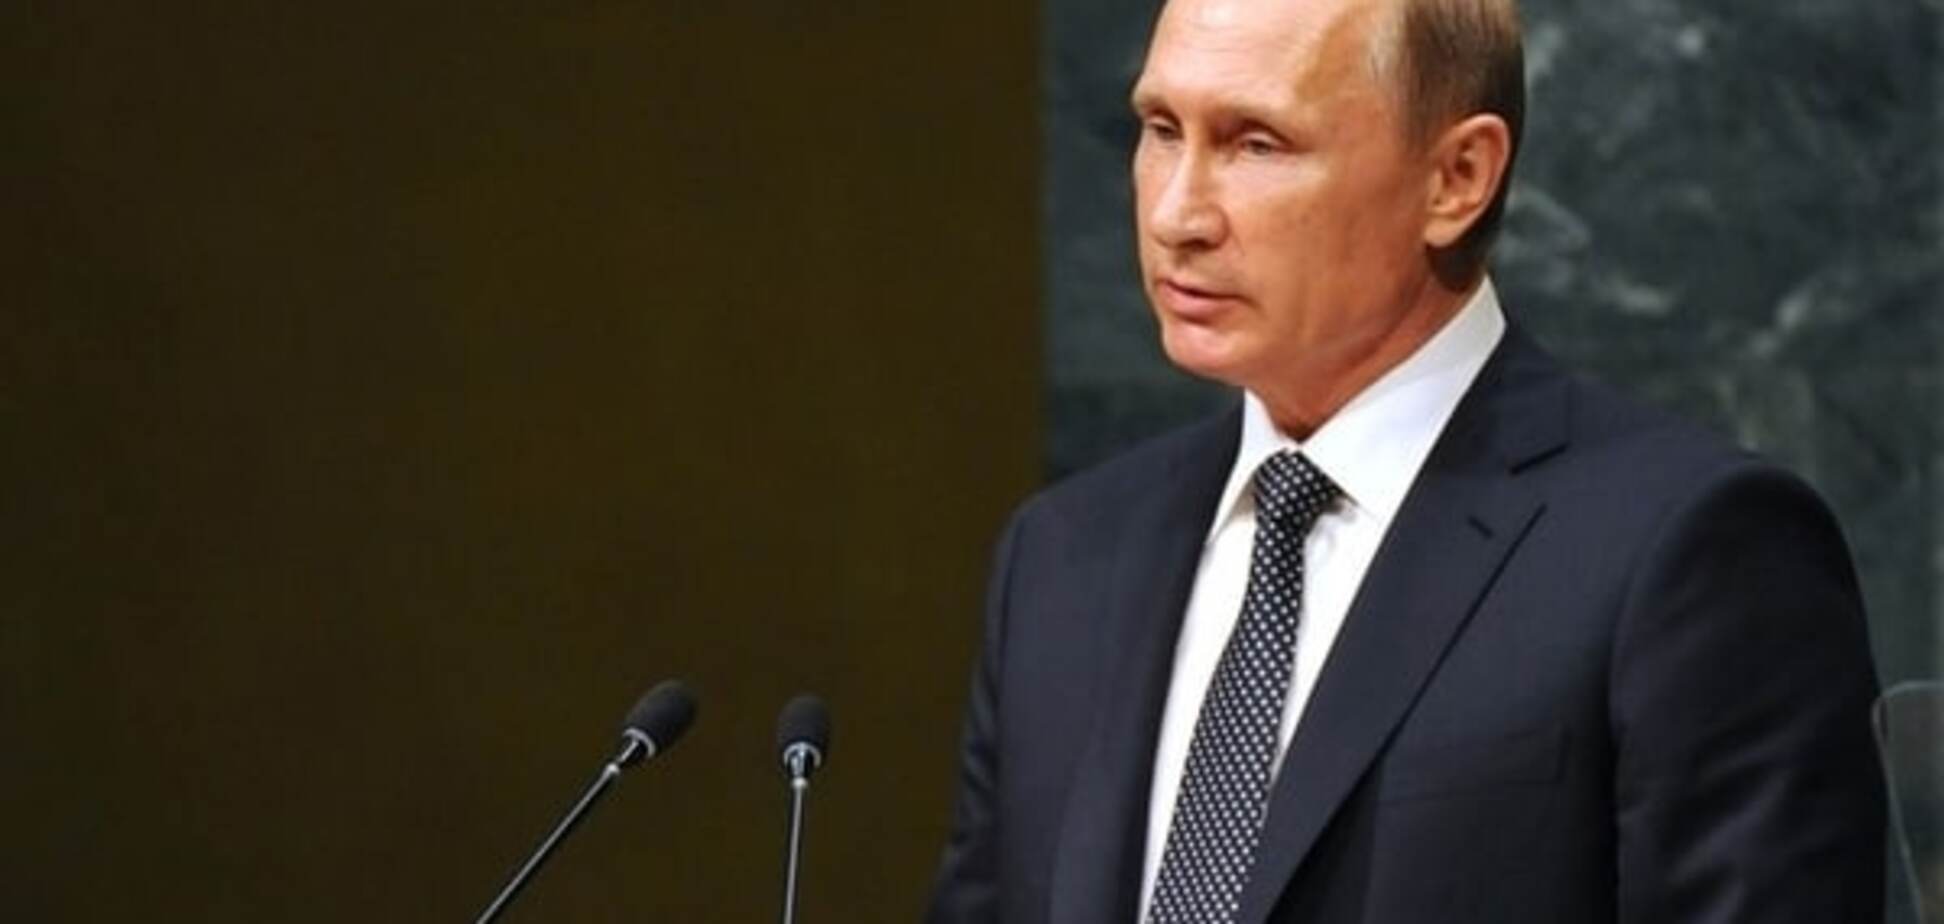 Террористы — плохие, санкции — к черту! Эксперты оценили речь Путина в ООН